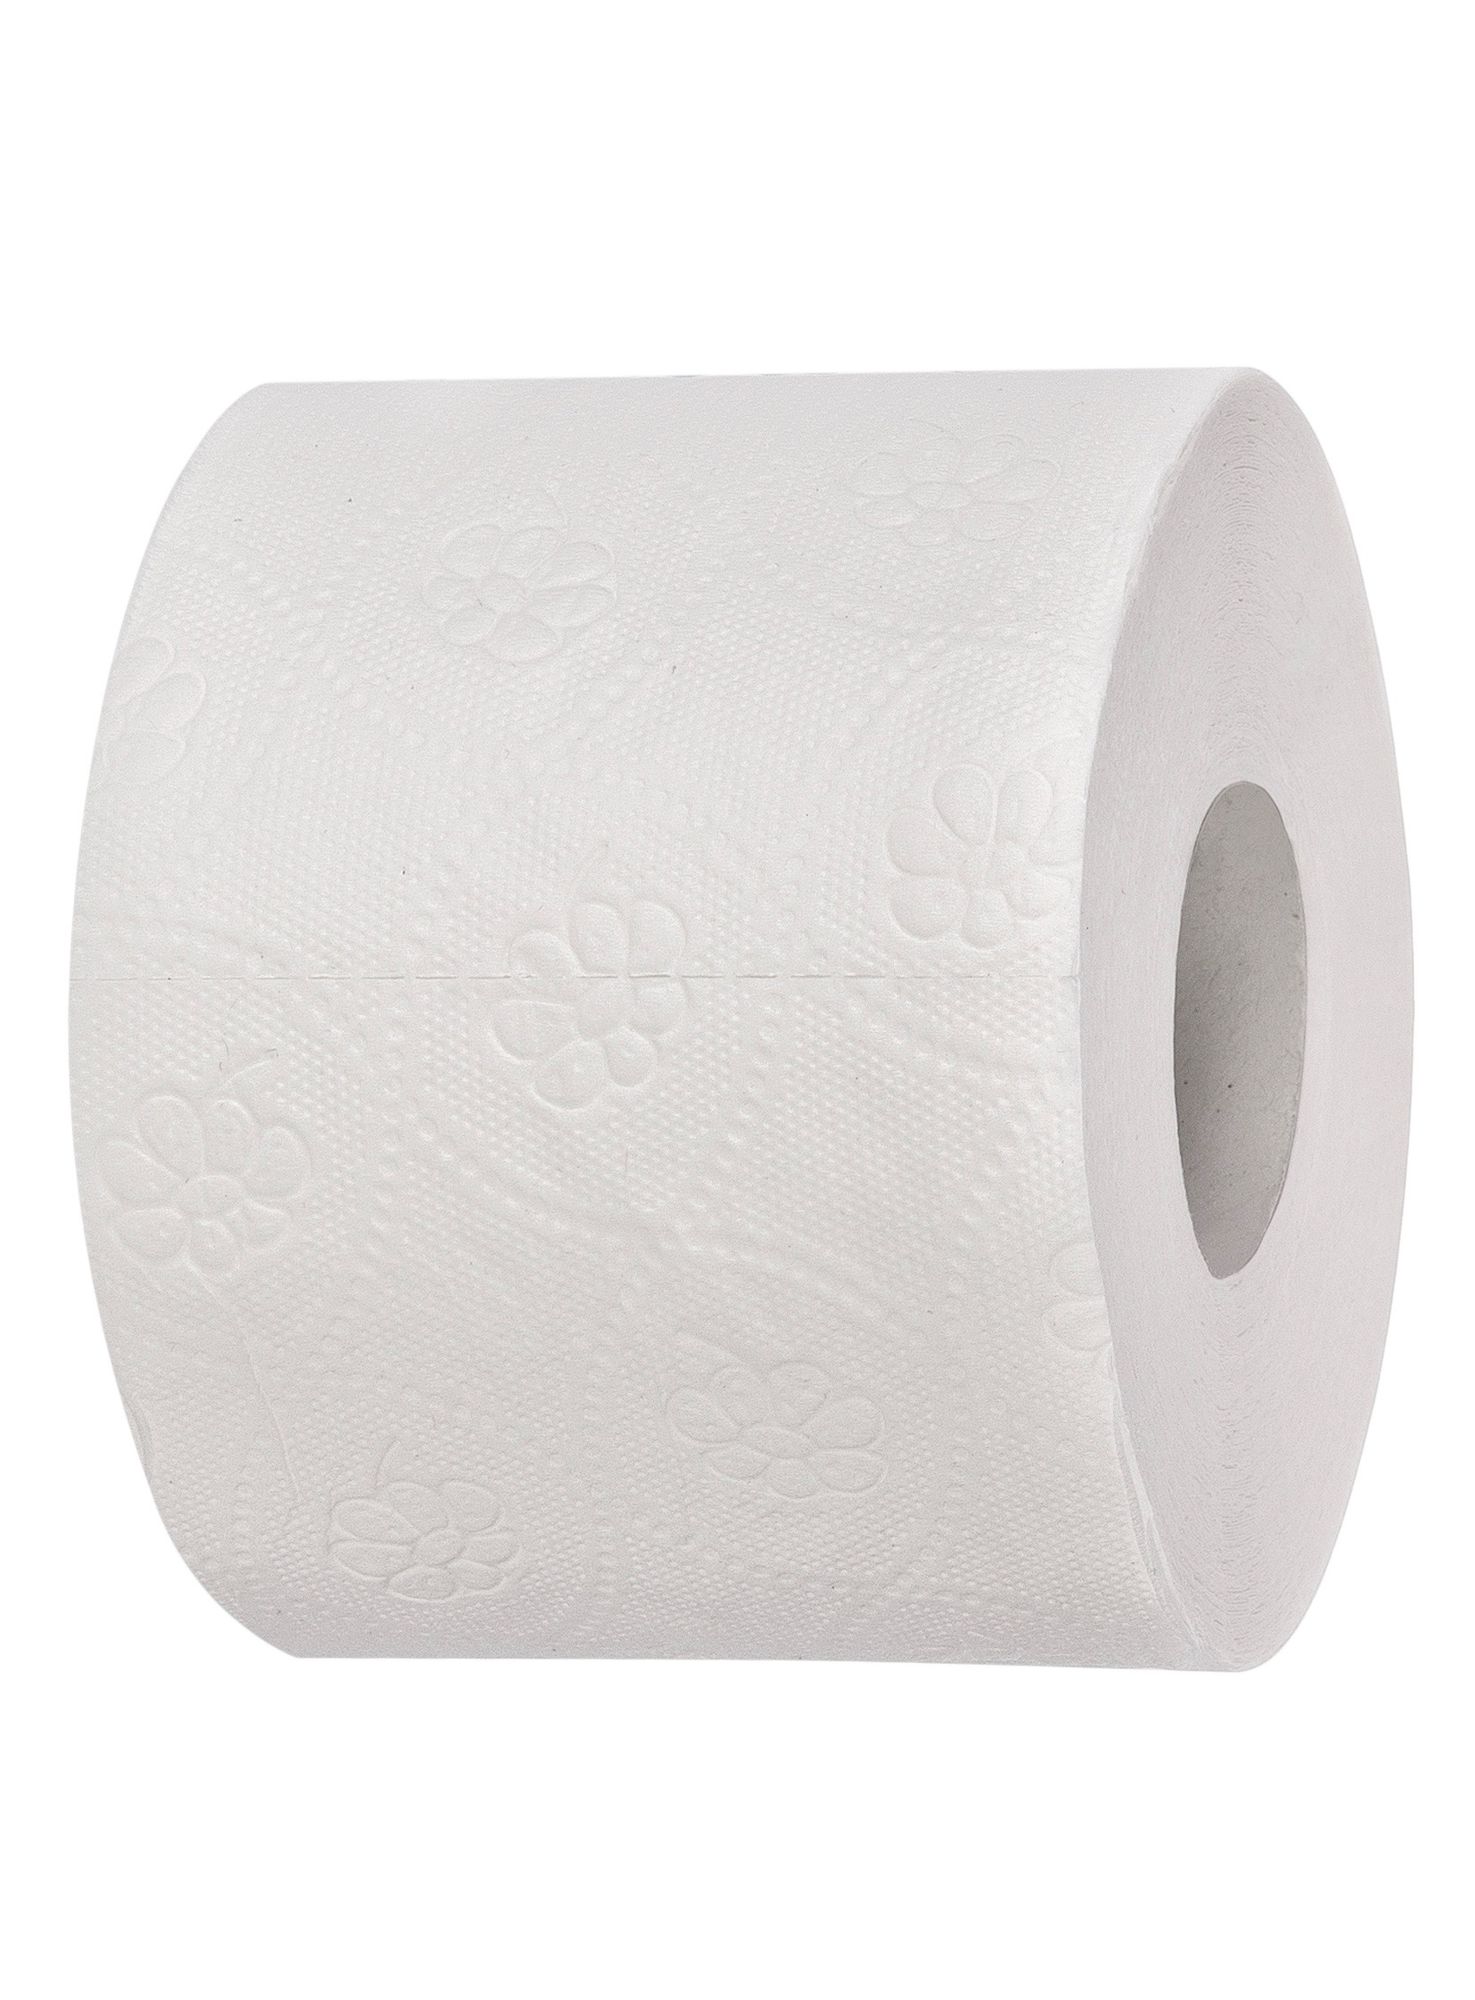 72 x Rollen Toilettenpapier 3-lagig 250 Blatt Hochweiß Zellulose 9 x 8 Rollen